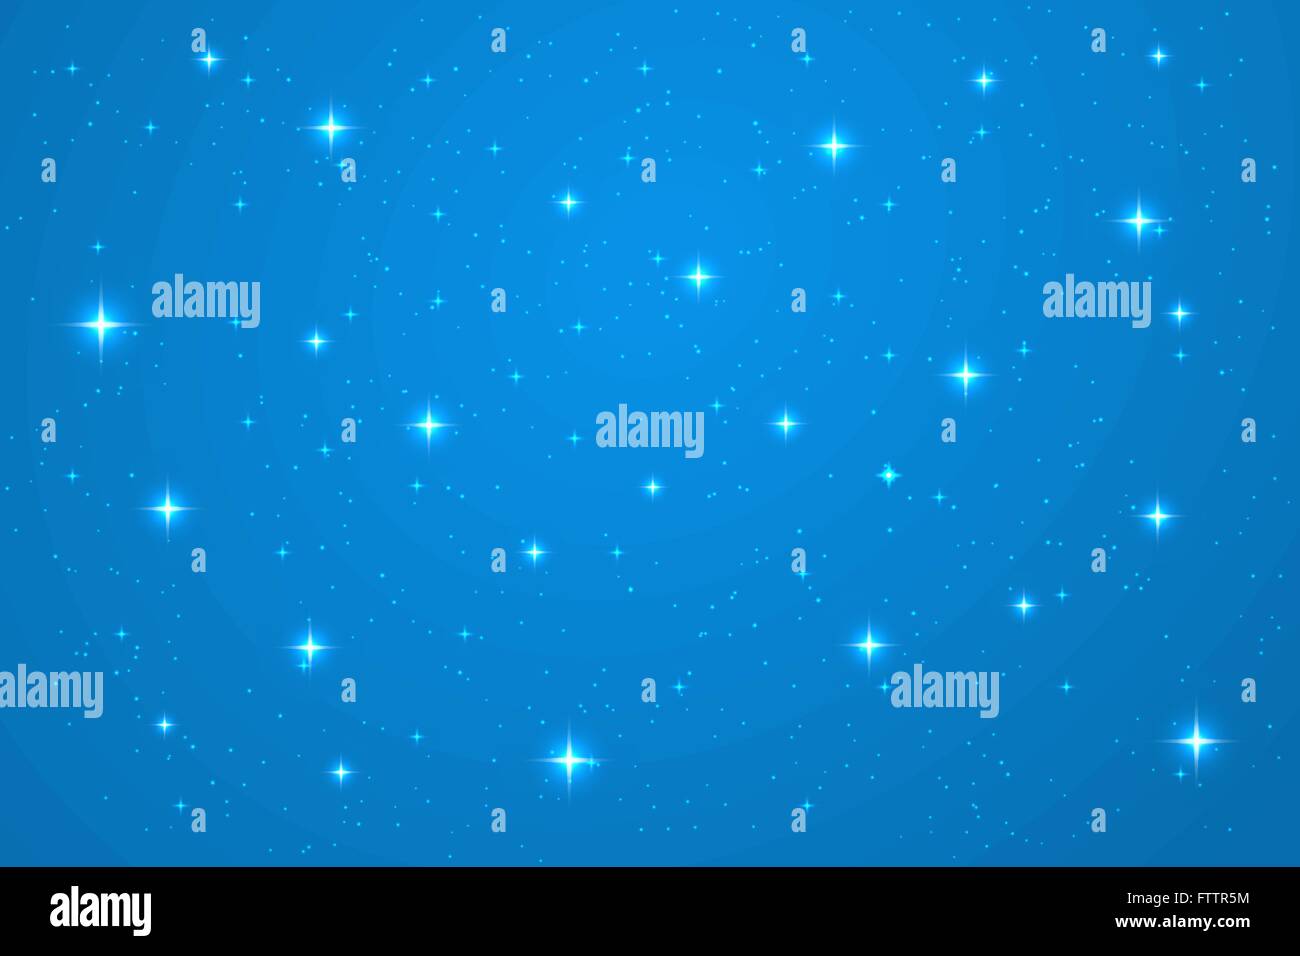 Blaue Nacht horizontale Hintergrund. Abstraktes Vektor Vorlage Stock Vektor